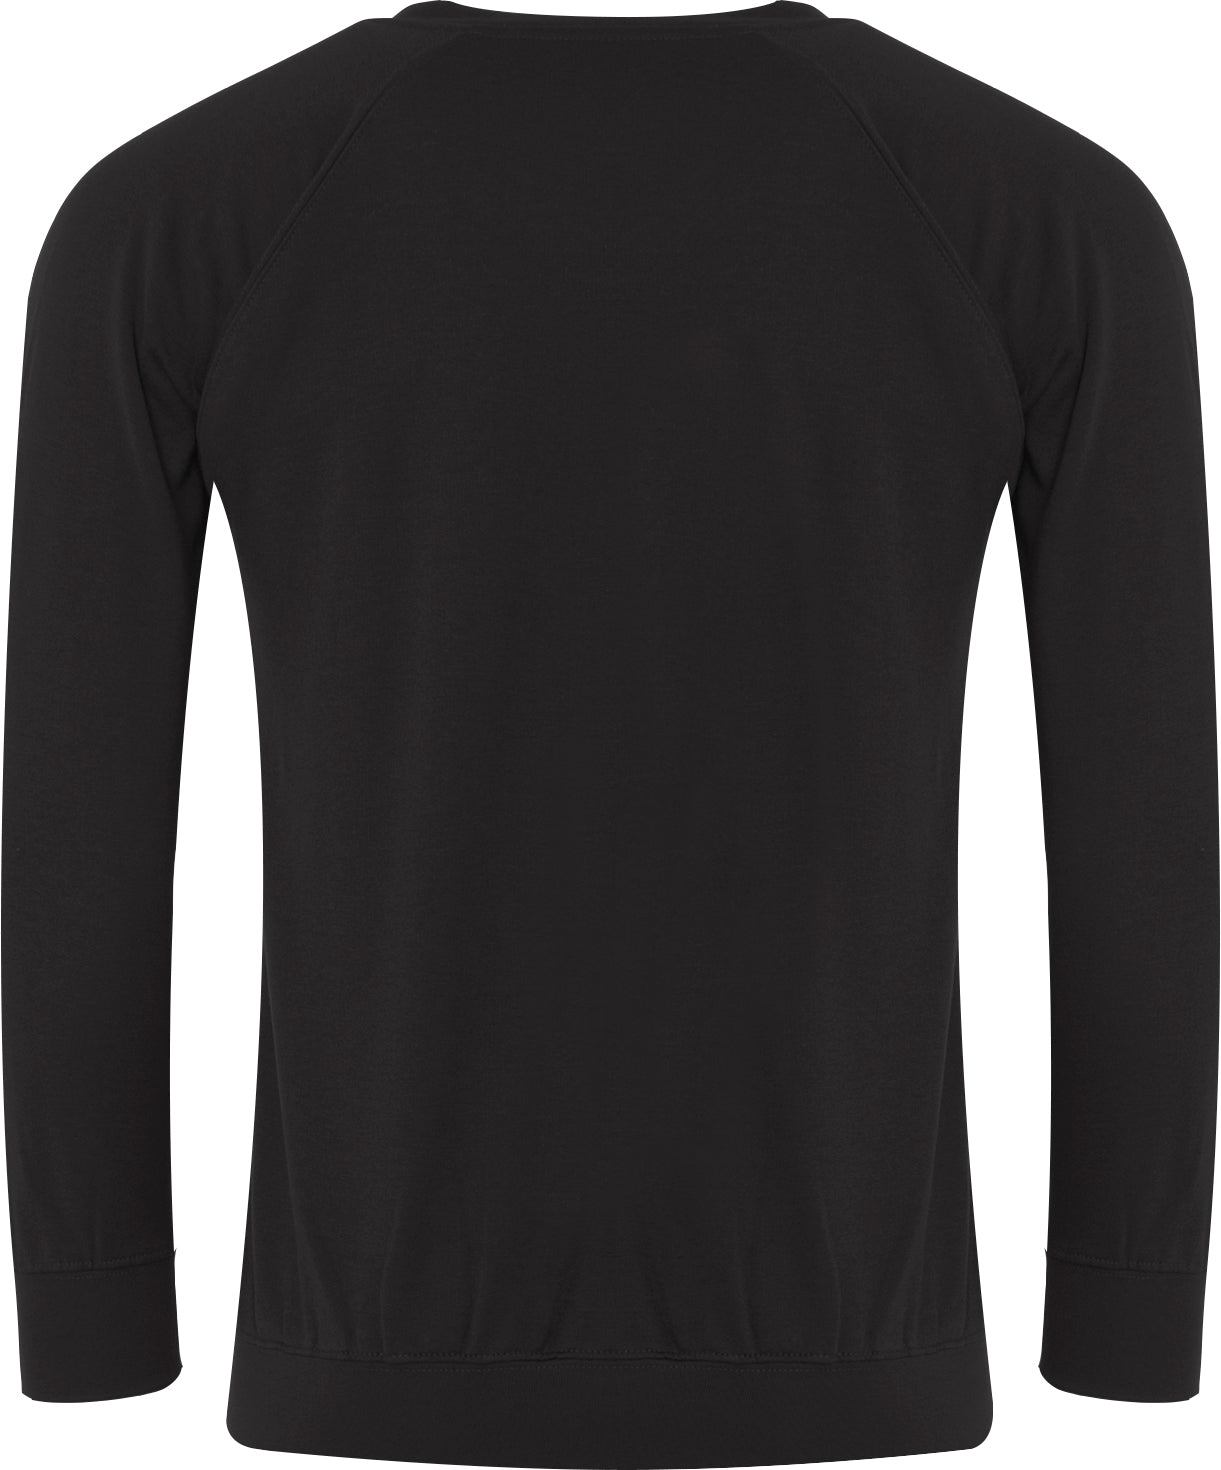 Leeds East Academy Black PE Sweatshirt